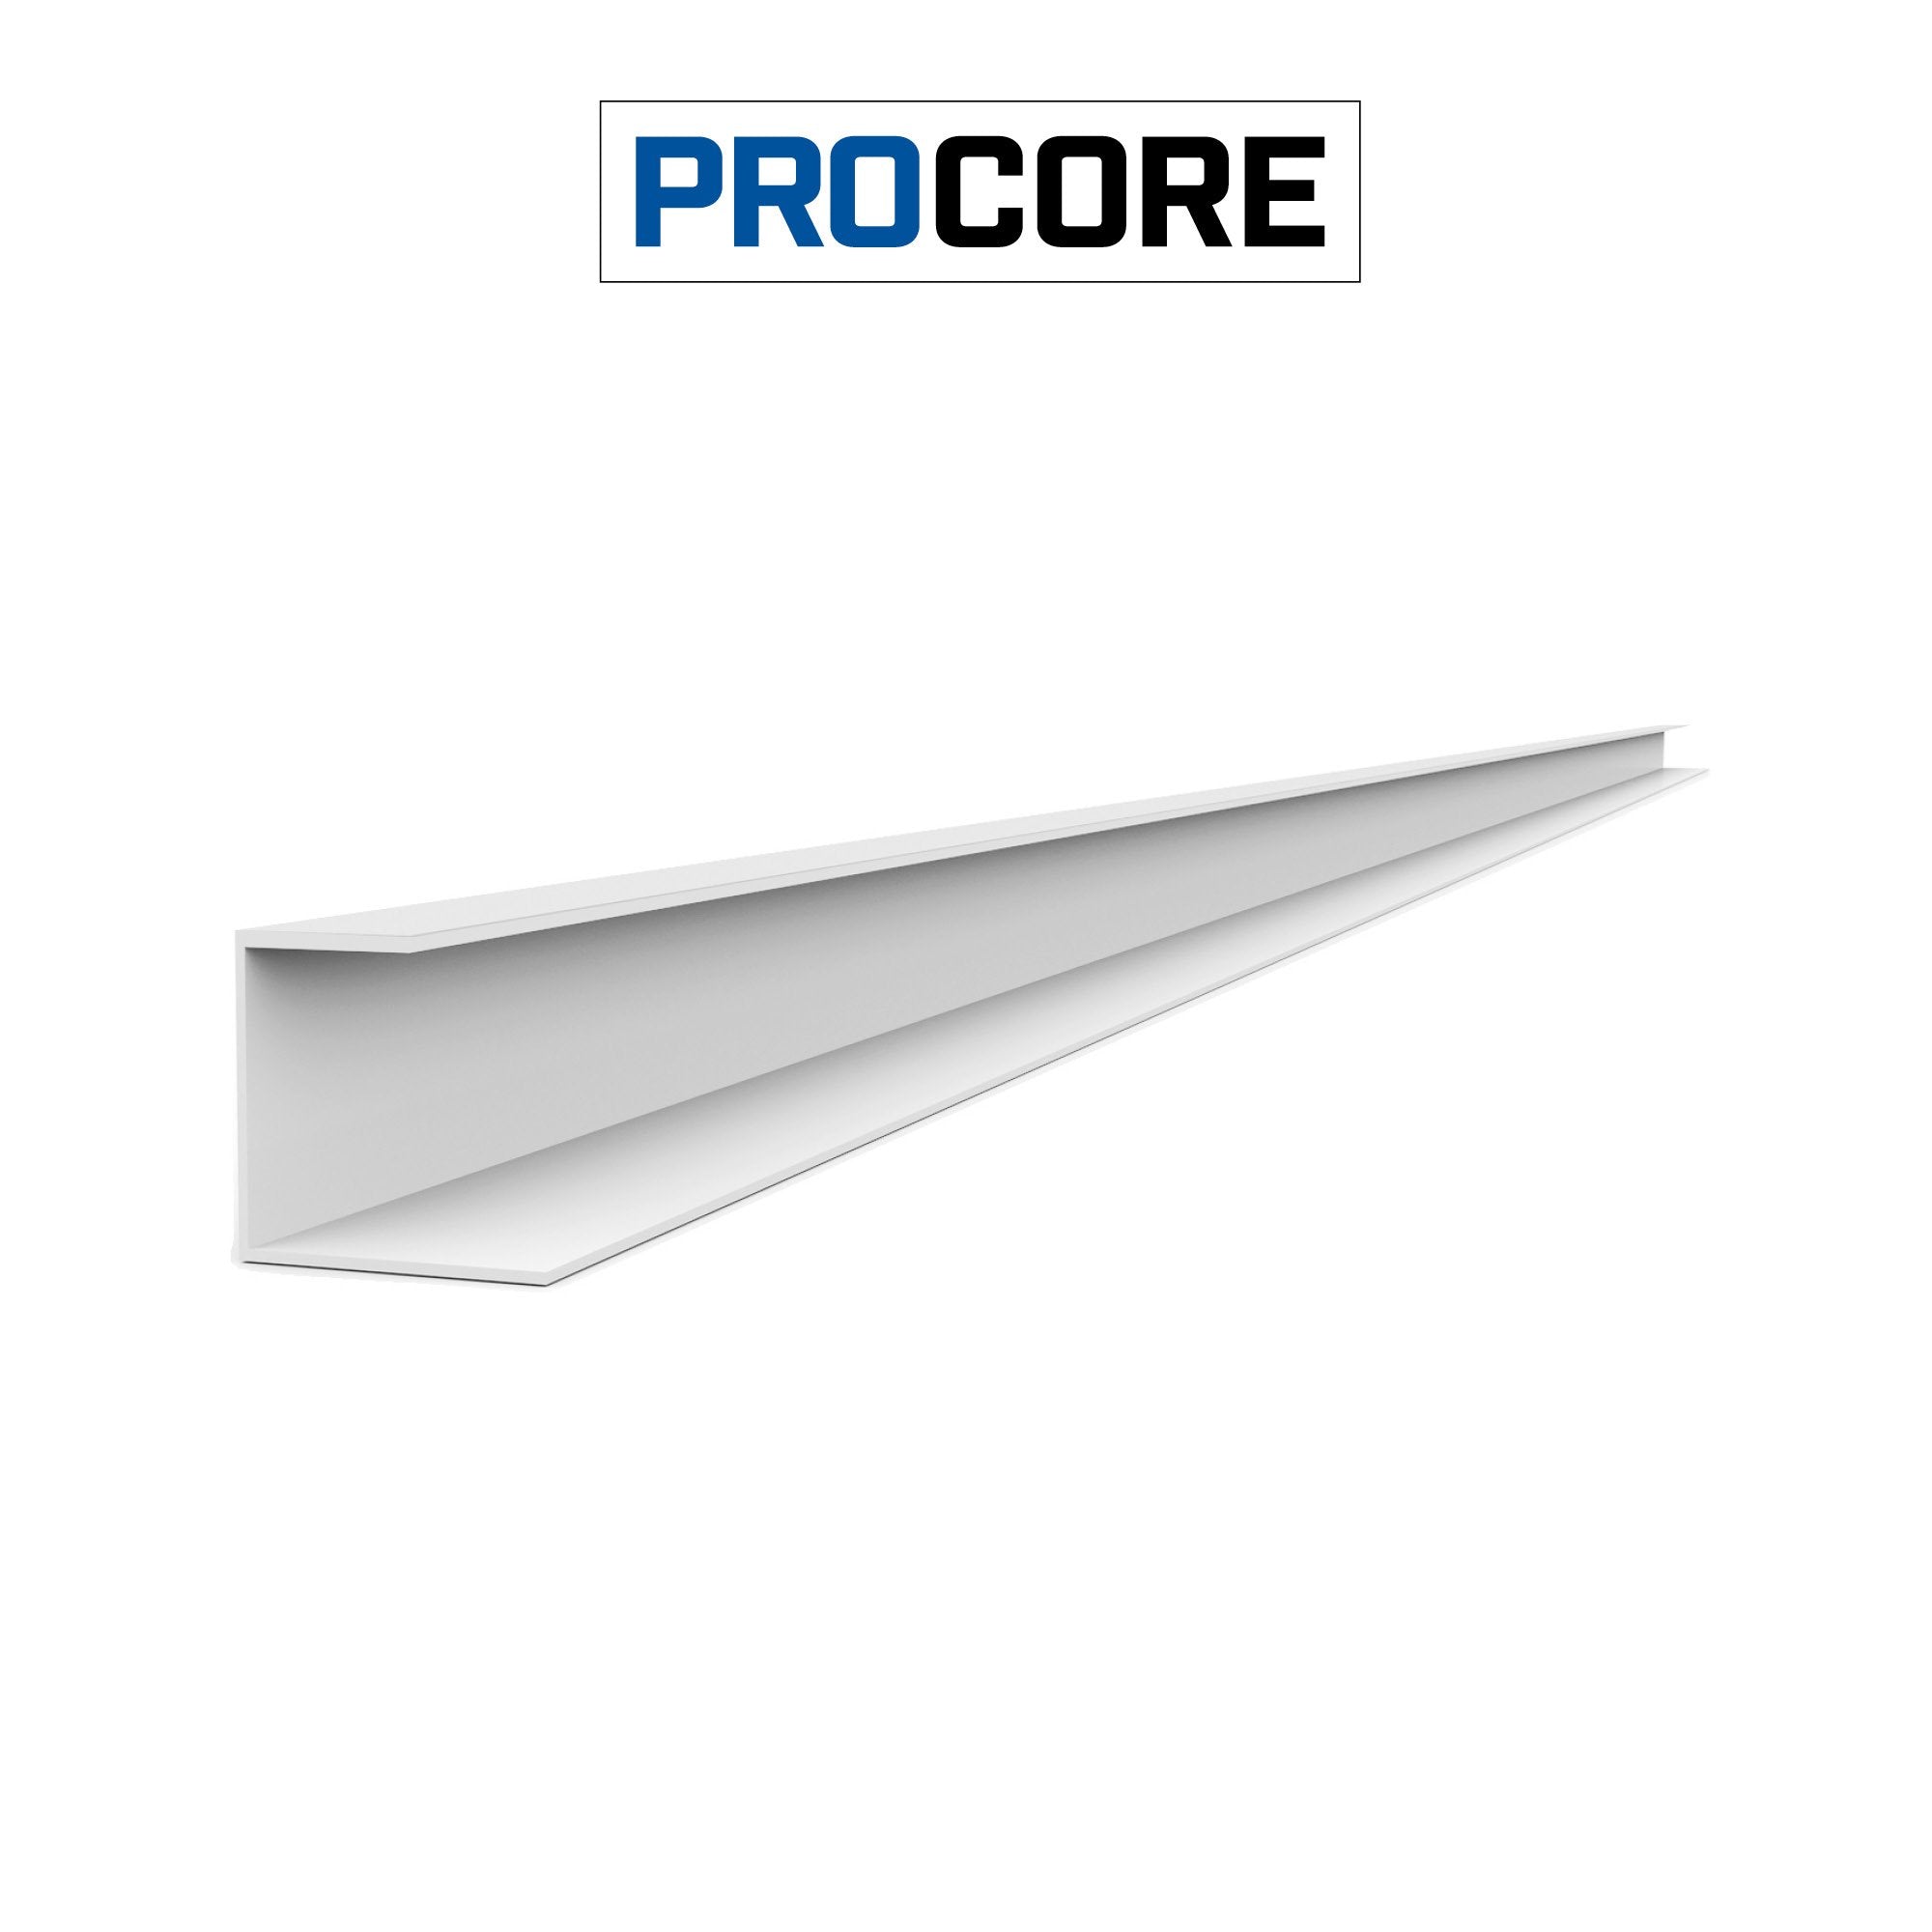 8 ft. PROCORE PVC Side Trim Pack - Trims